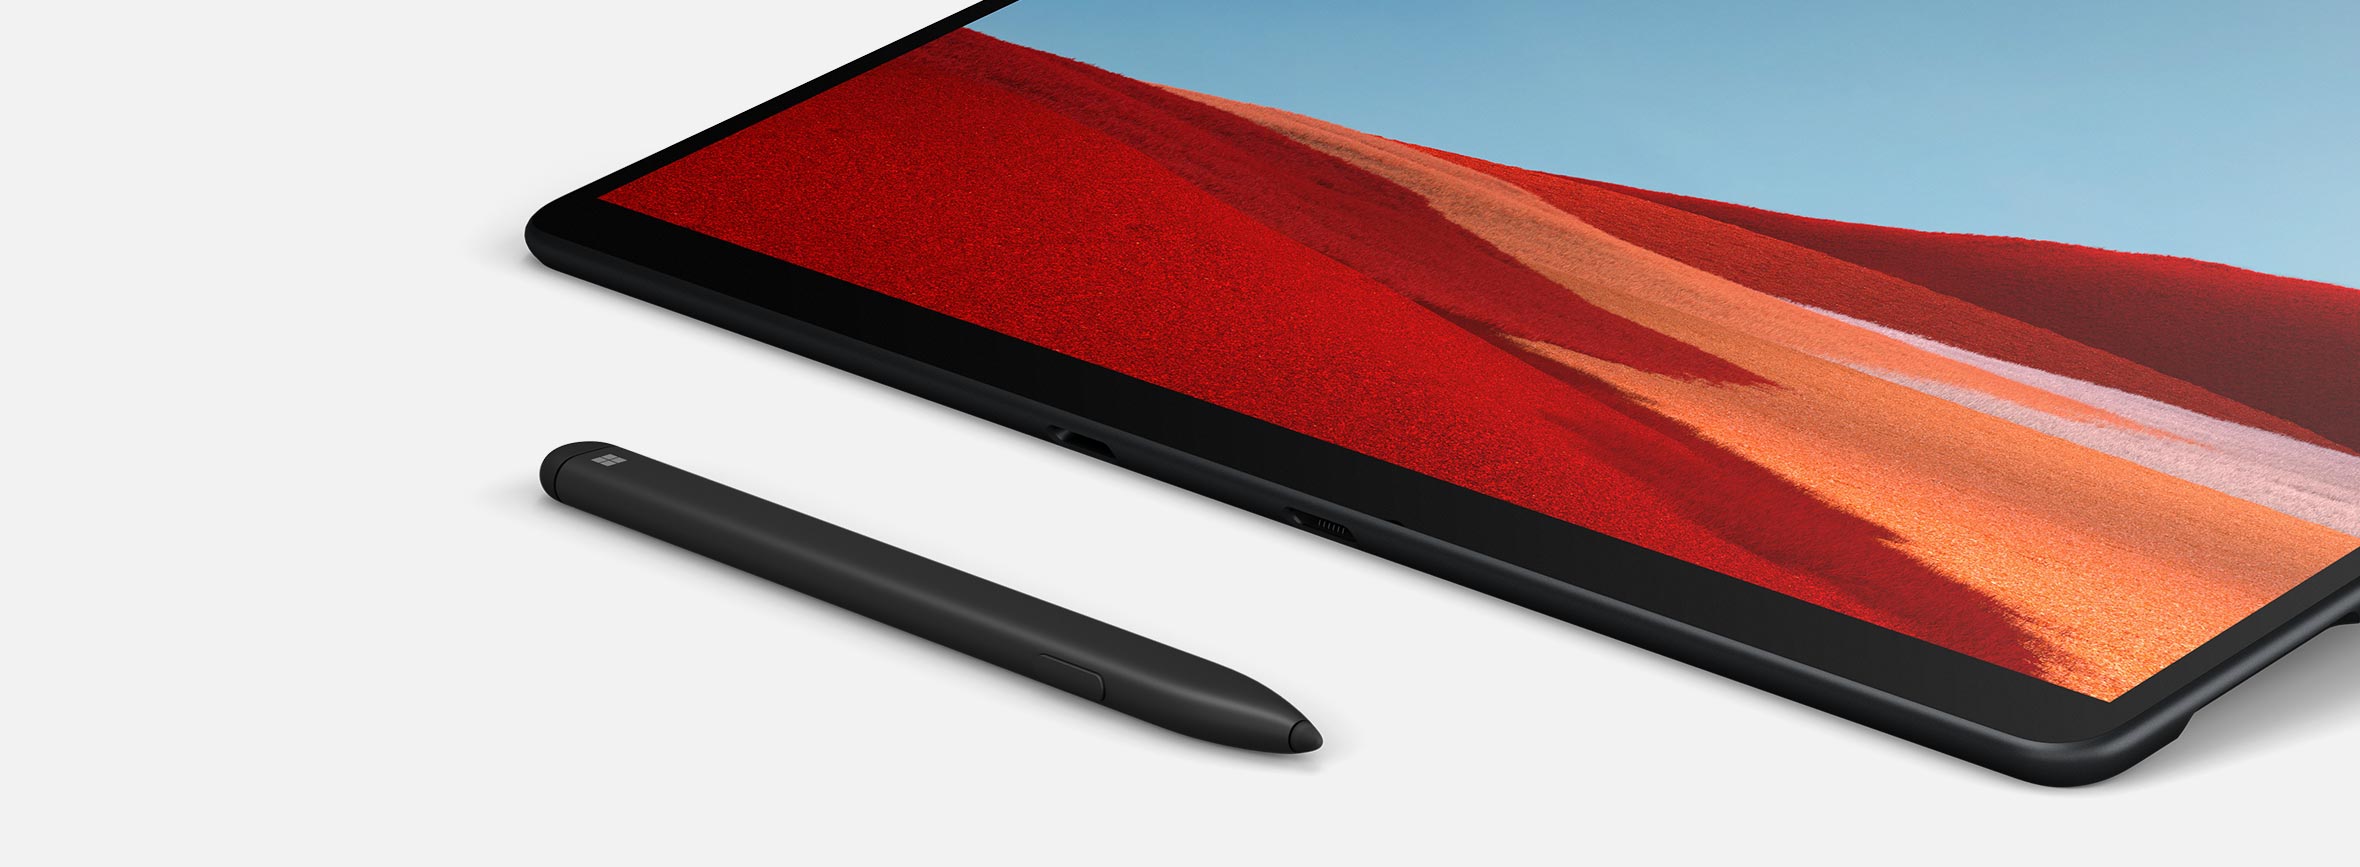 Surface X pen